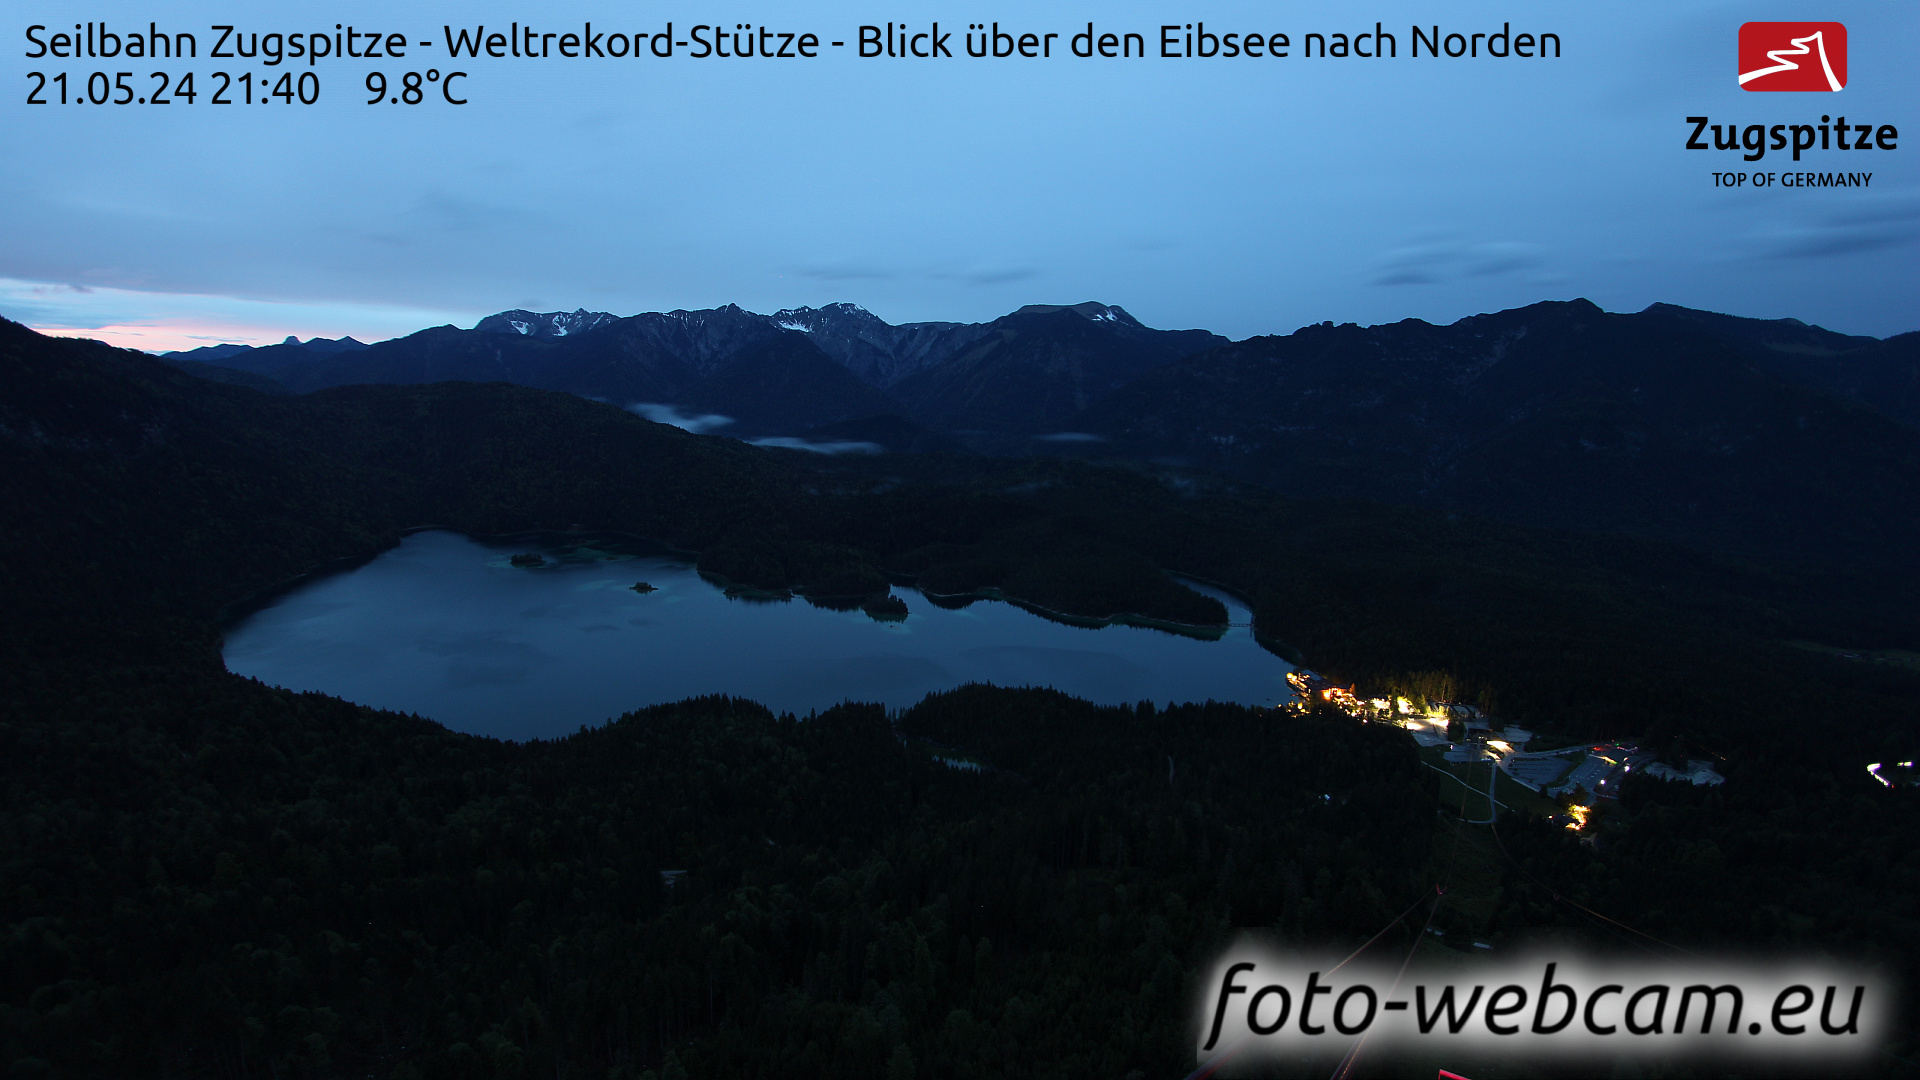 Zugspitze So. 21:49